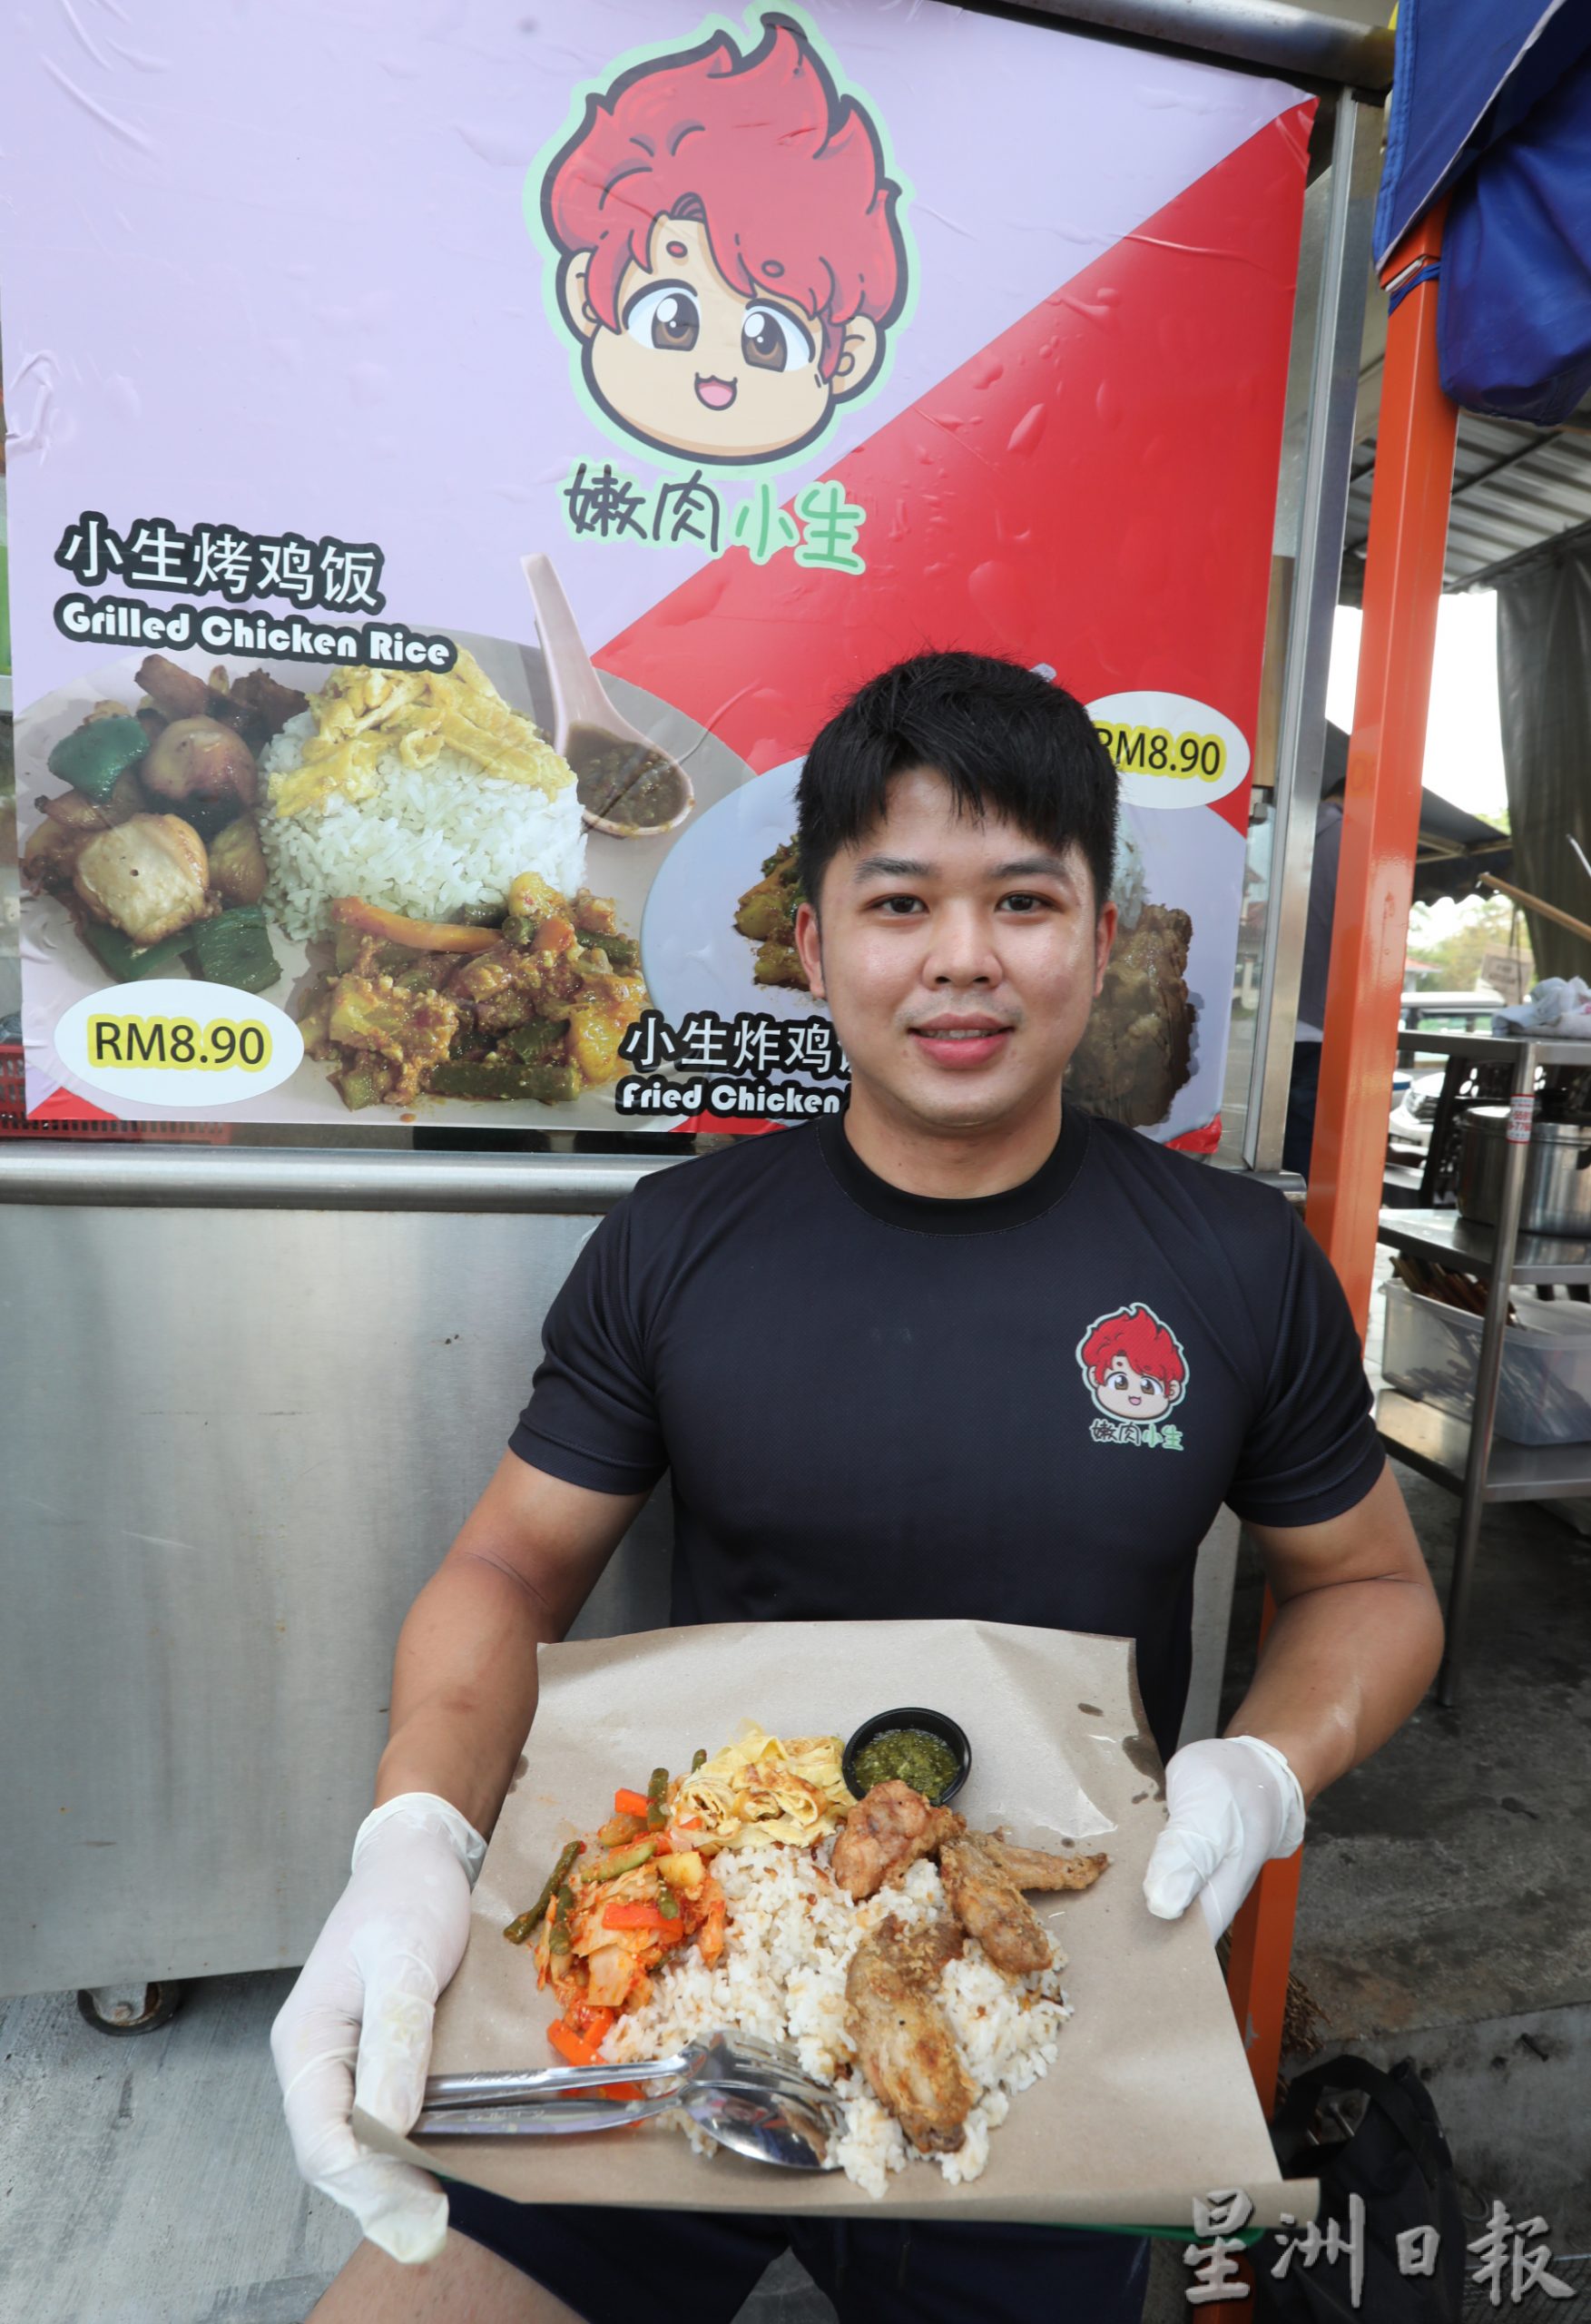 柔：【食客指路】（3月21日刋）：结合马来式和中式料理 “小生炸鸡饭”让人吃出惊喜